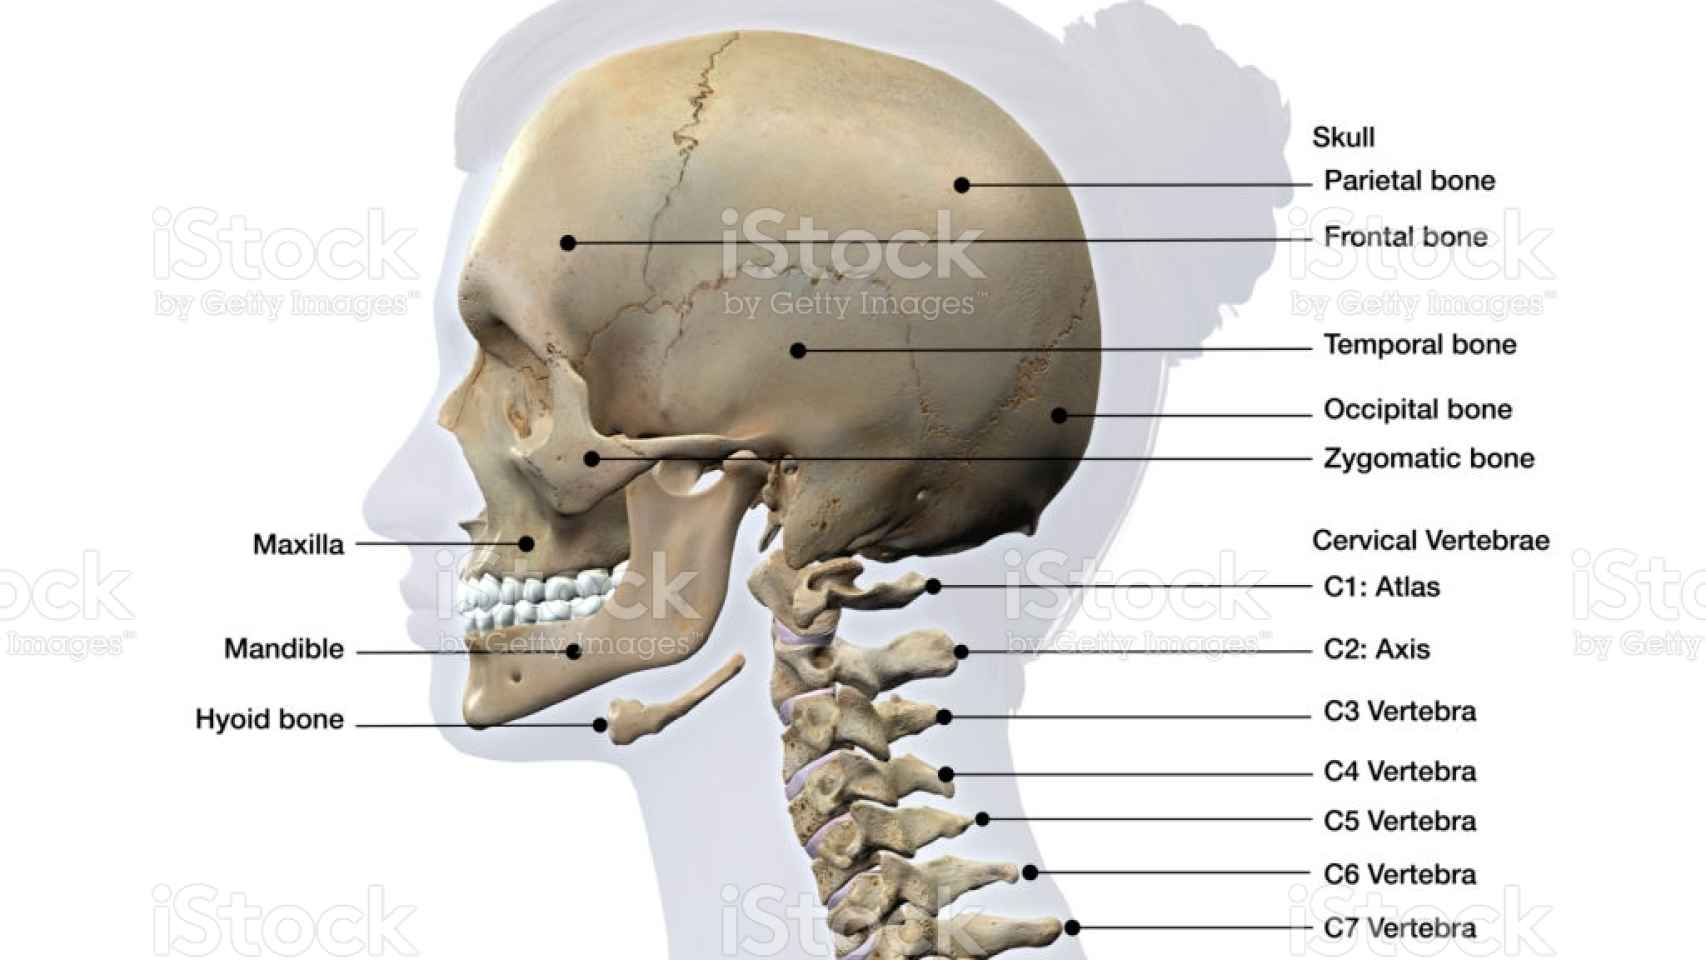 Vista lateral de cráneo y huesos de las vértebras del cuello.